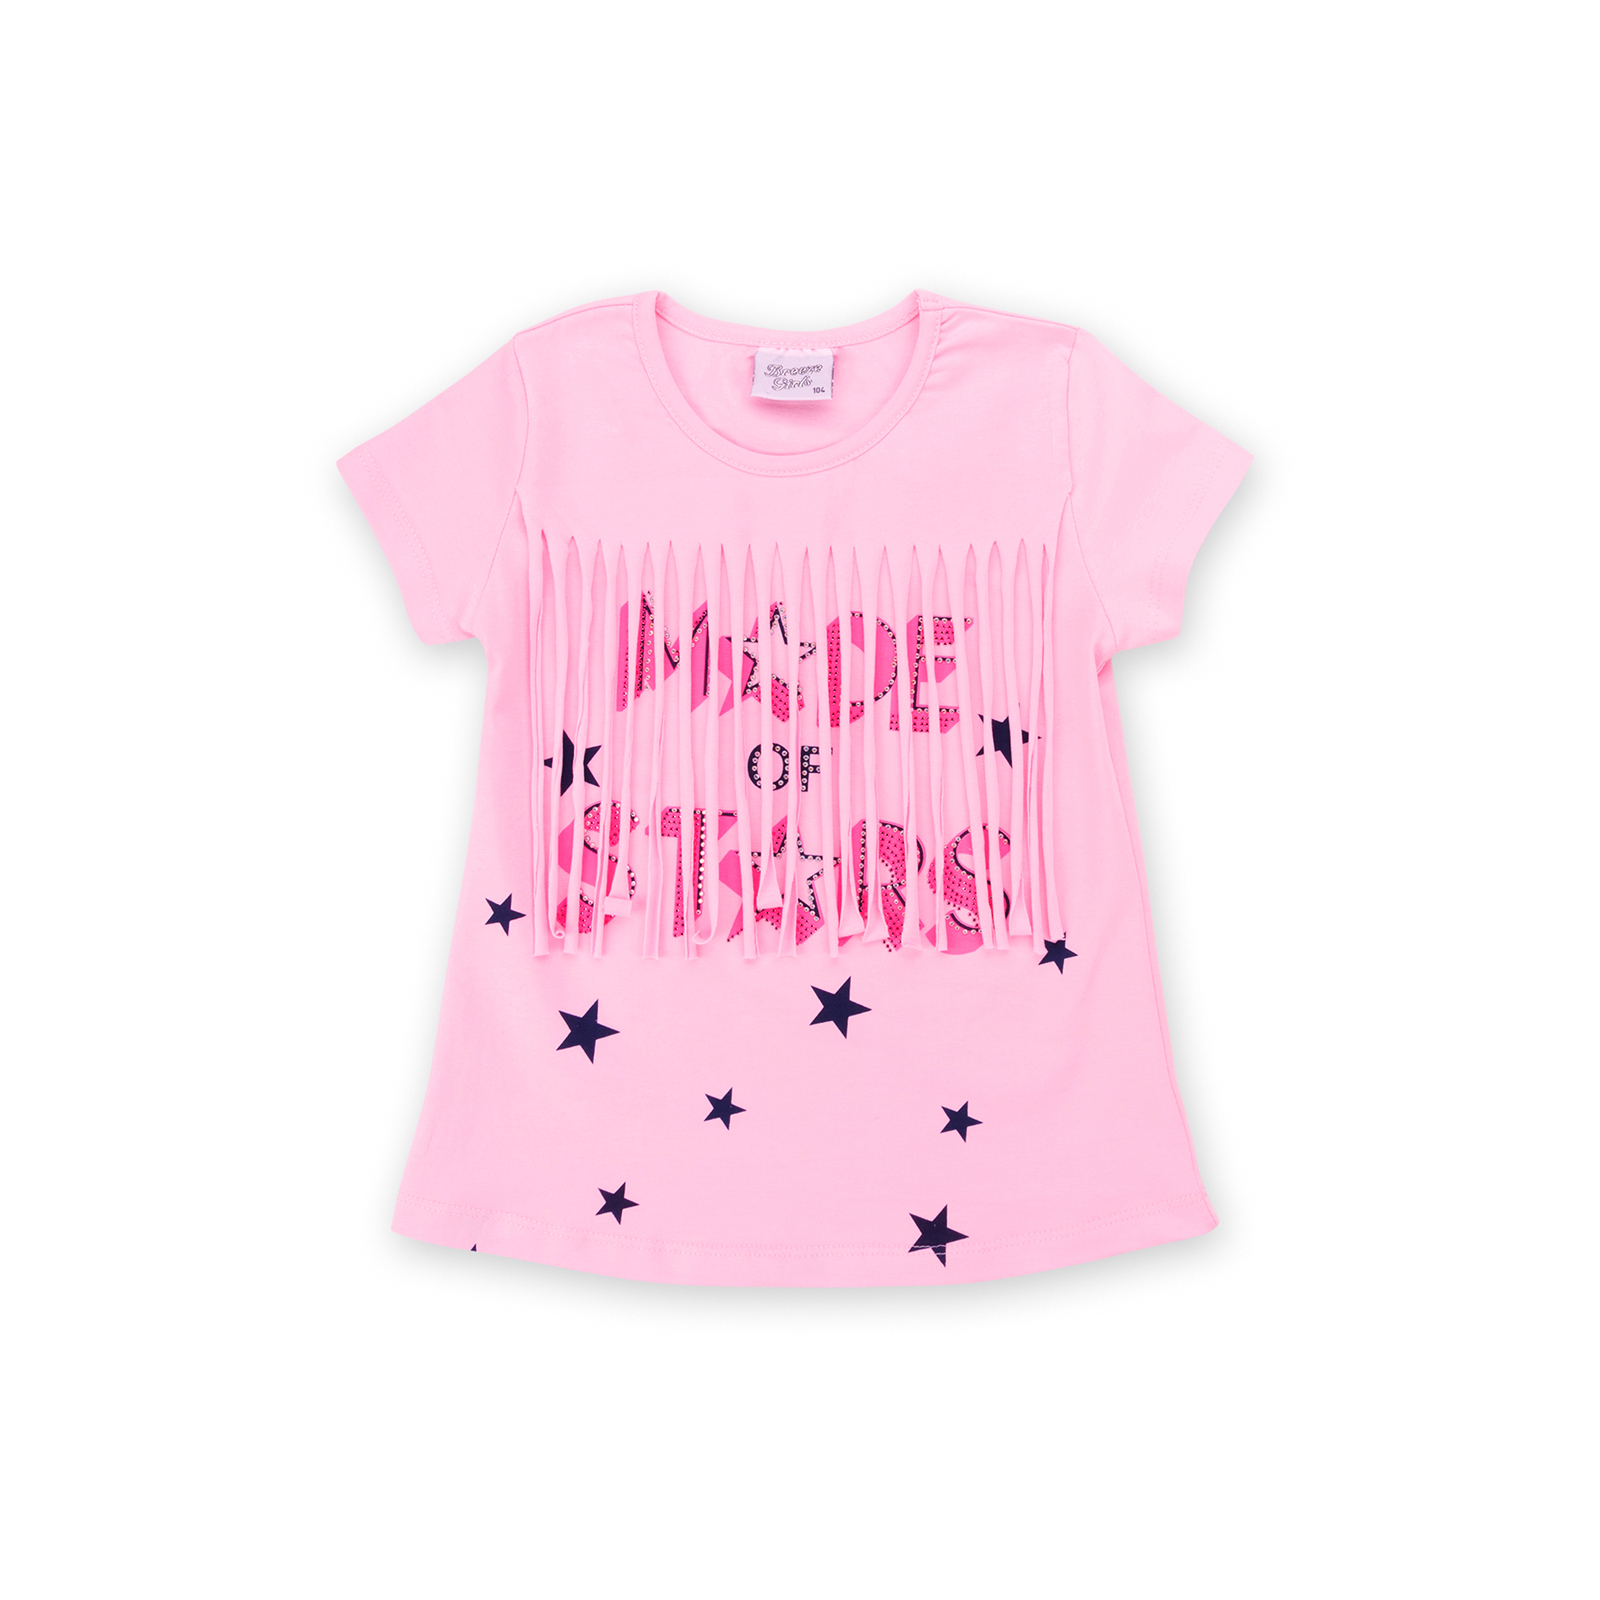 Набор детской одежды Breeze футболка со звездочками с шортами (9036-110G-white) изображение 2